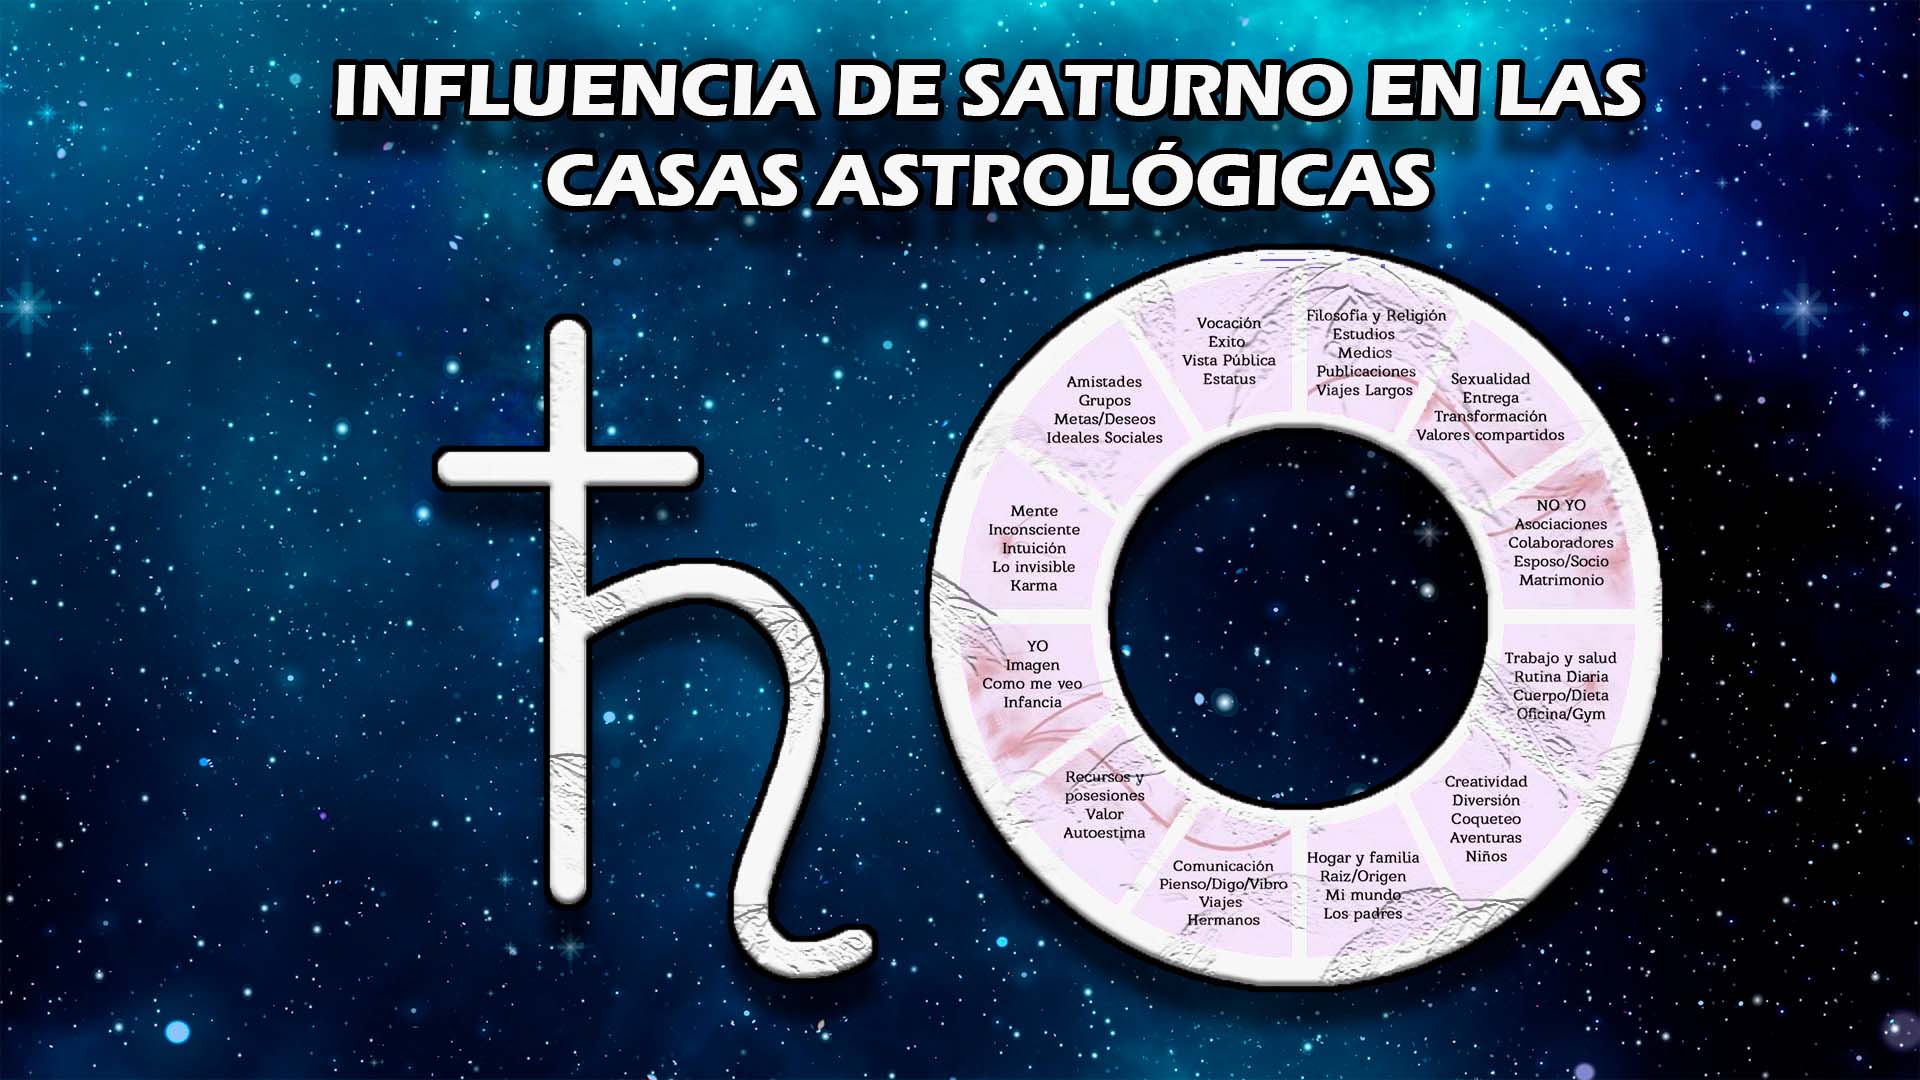 Influencia de Saturno en las casas astrológicas